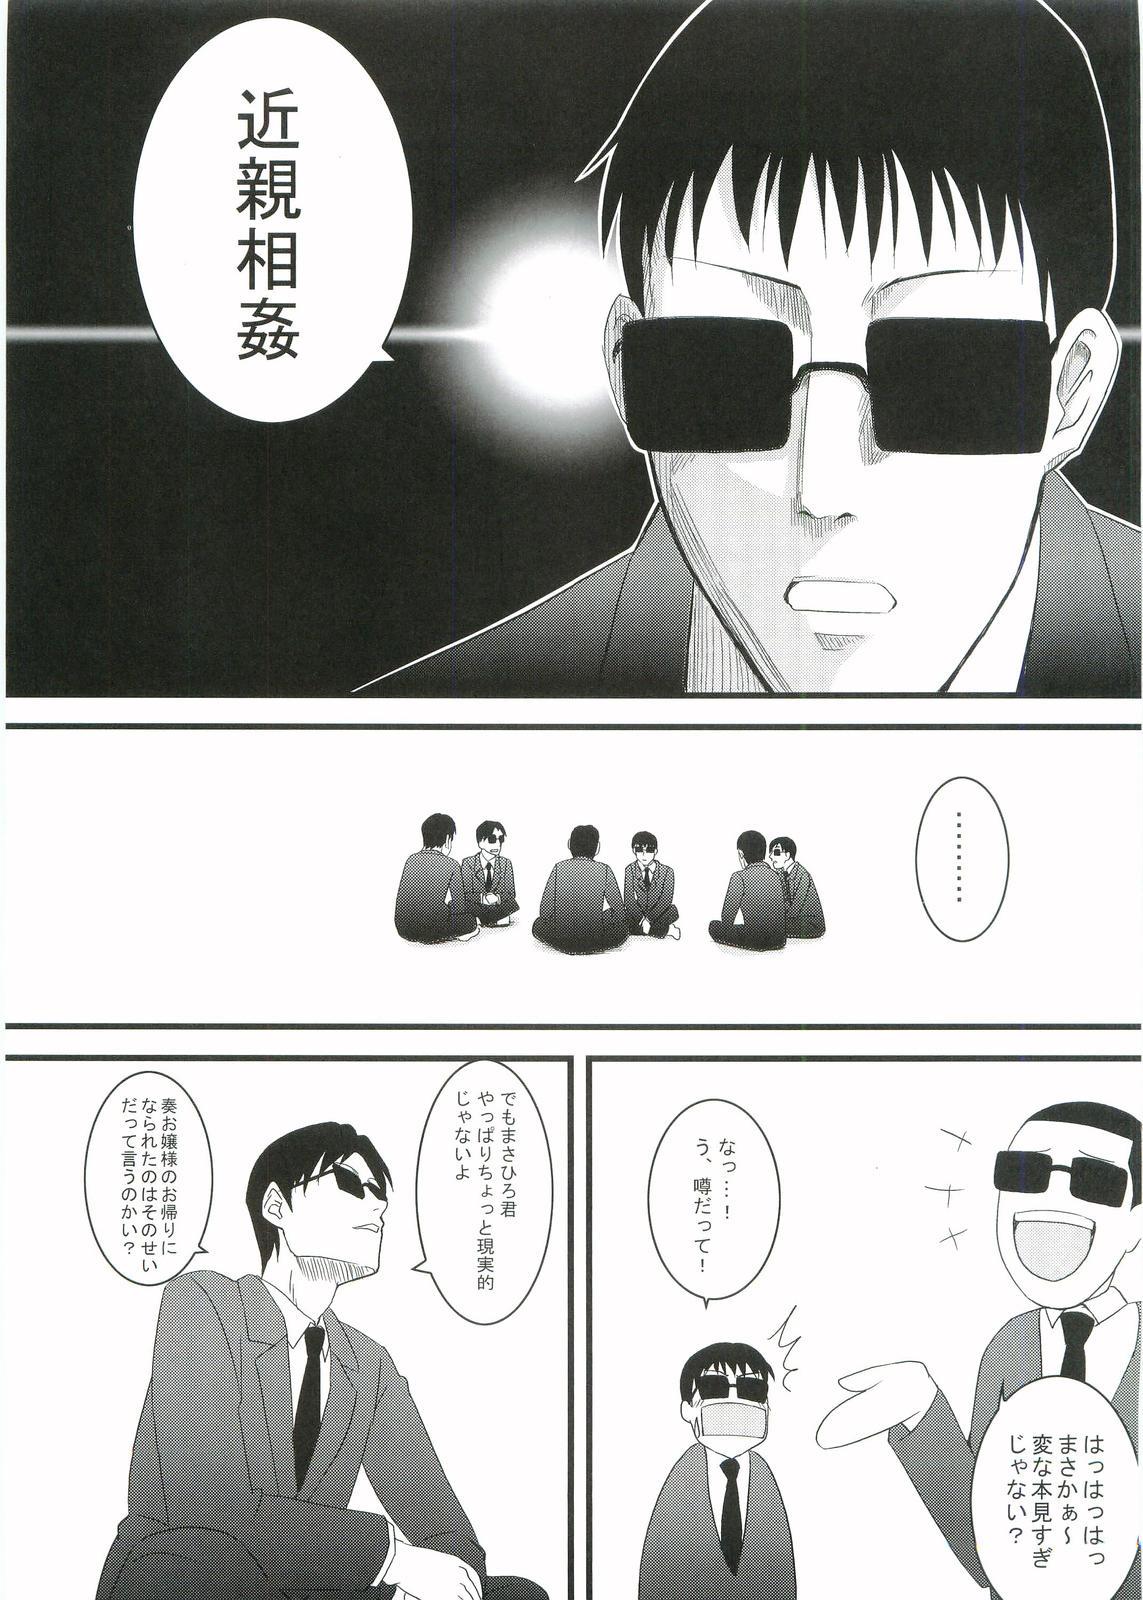 Les Kouhukuya no Ehon Gokujo 2 - Gokujou seitokai Foursome - Page 4